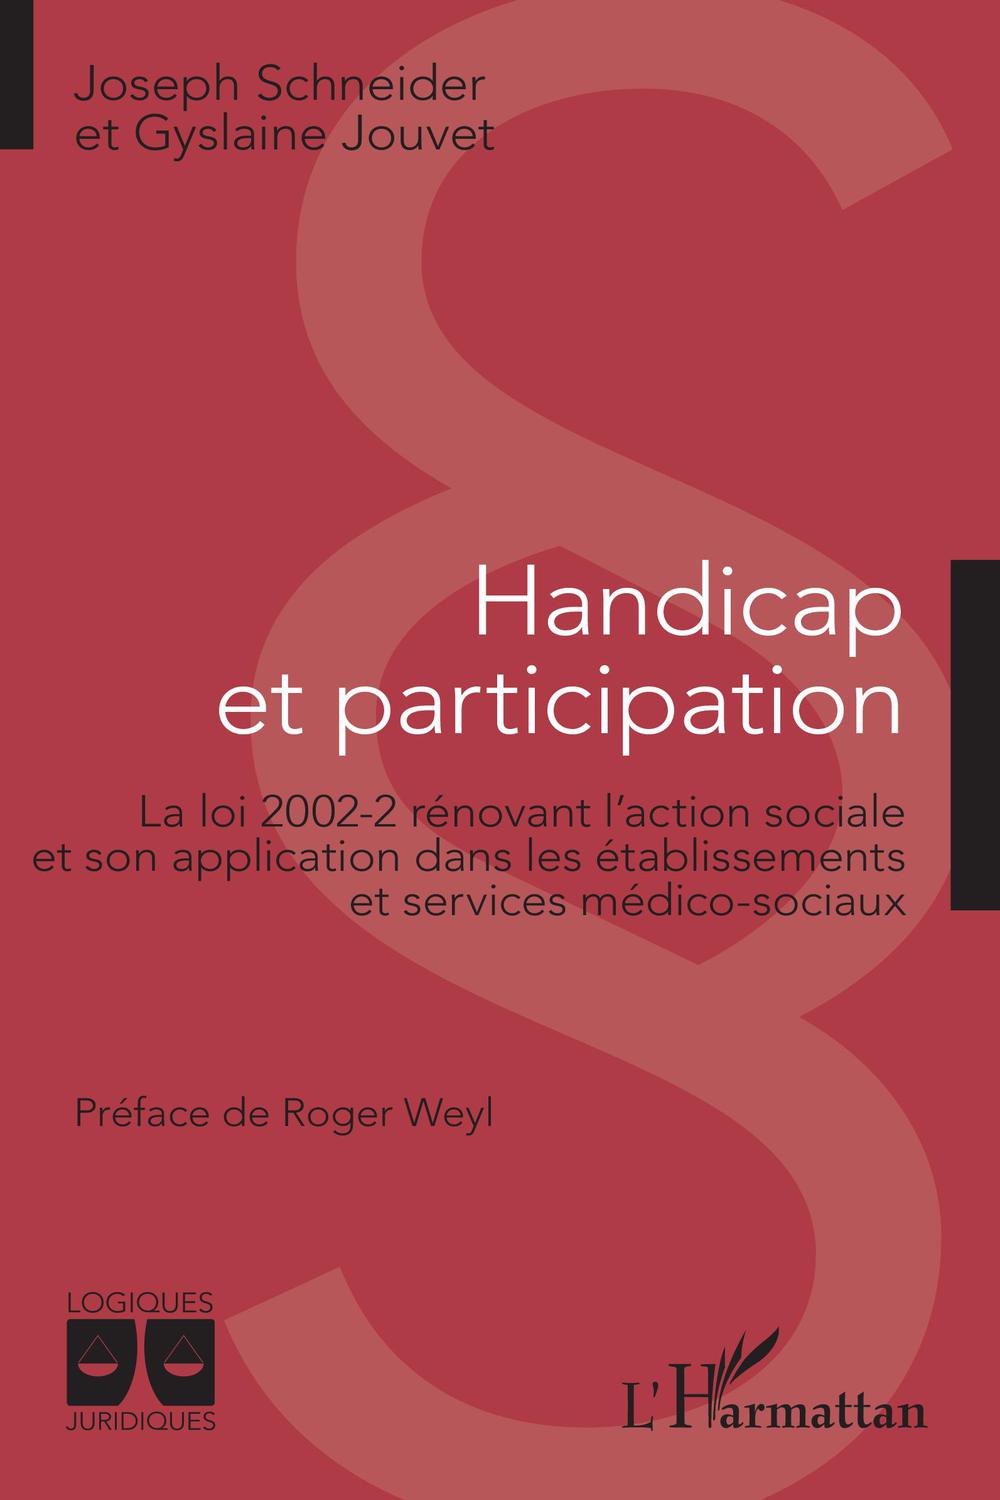 Handicap et participation - Joseph Schneider, Gyslaine Jouvet